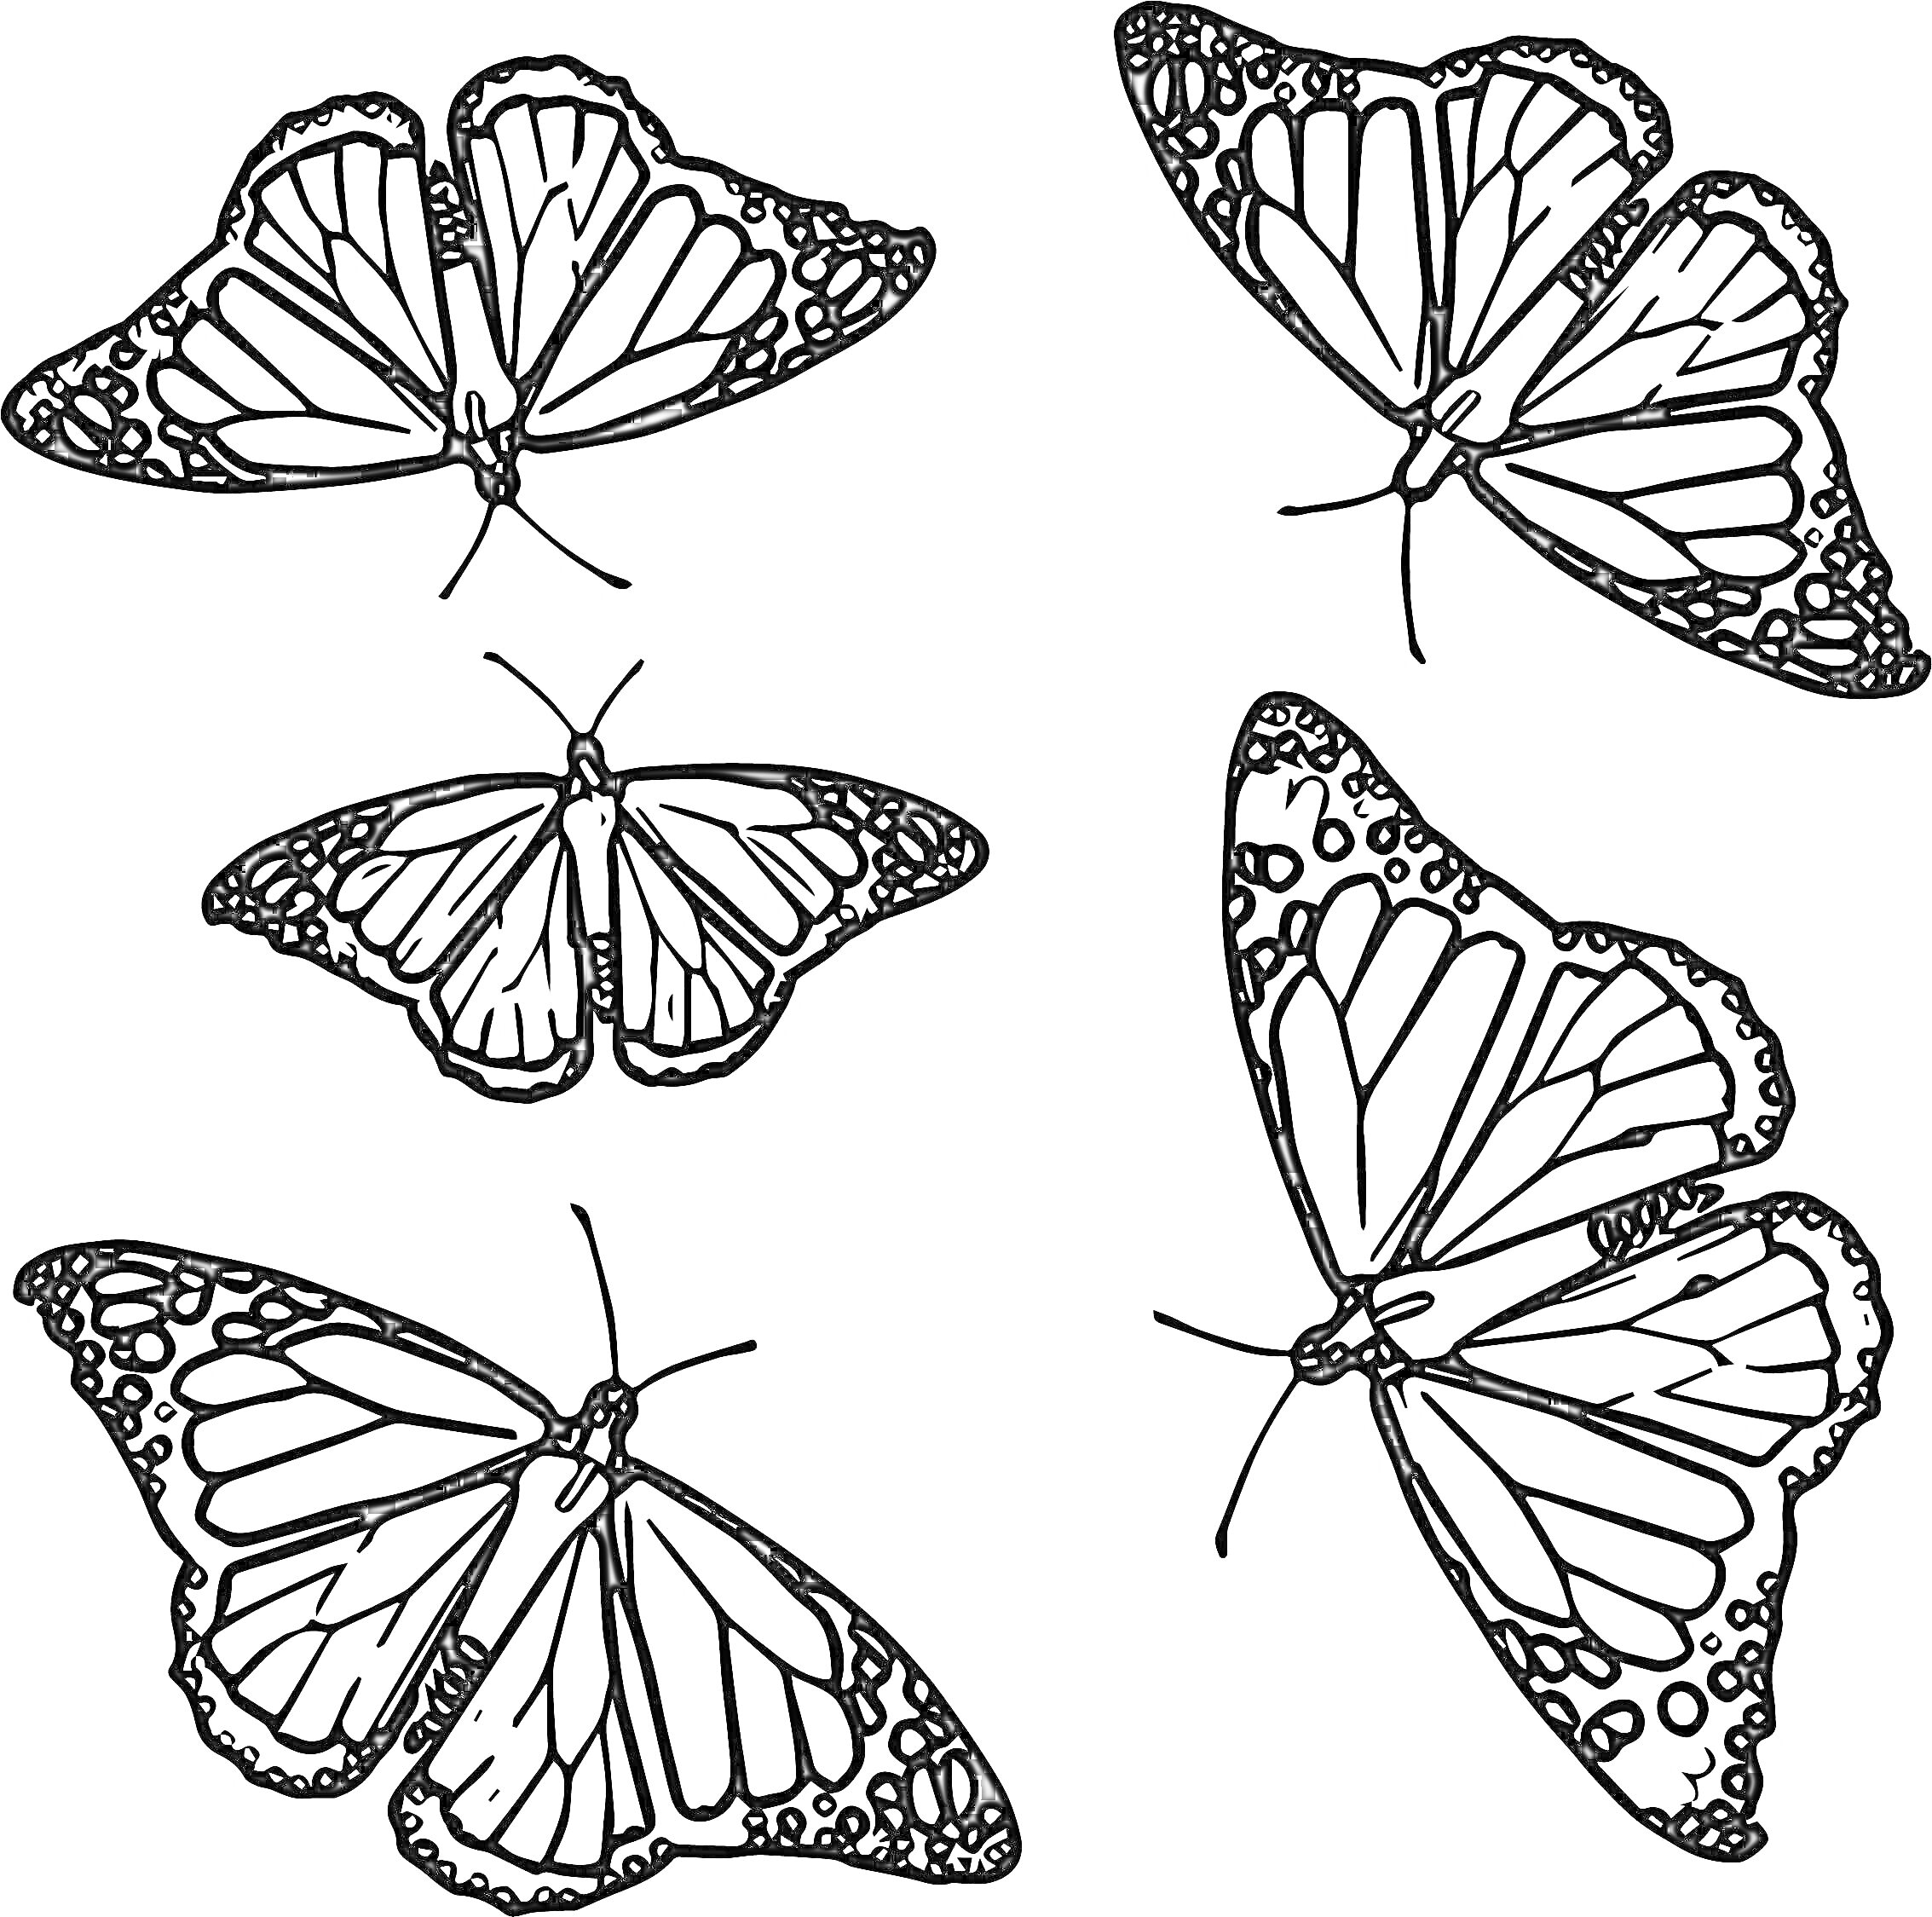 Раскраска Пять бабочек с узорчатыми крыльями в различных позах